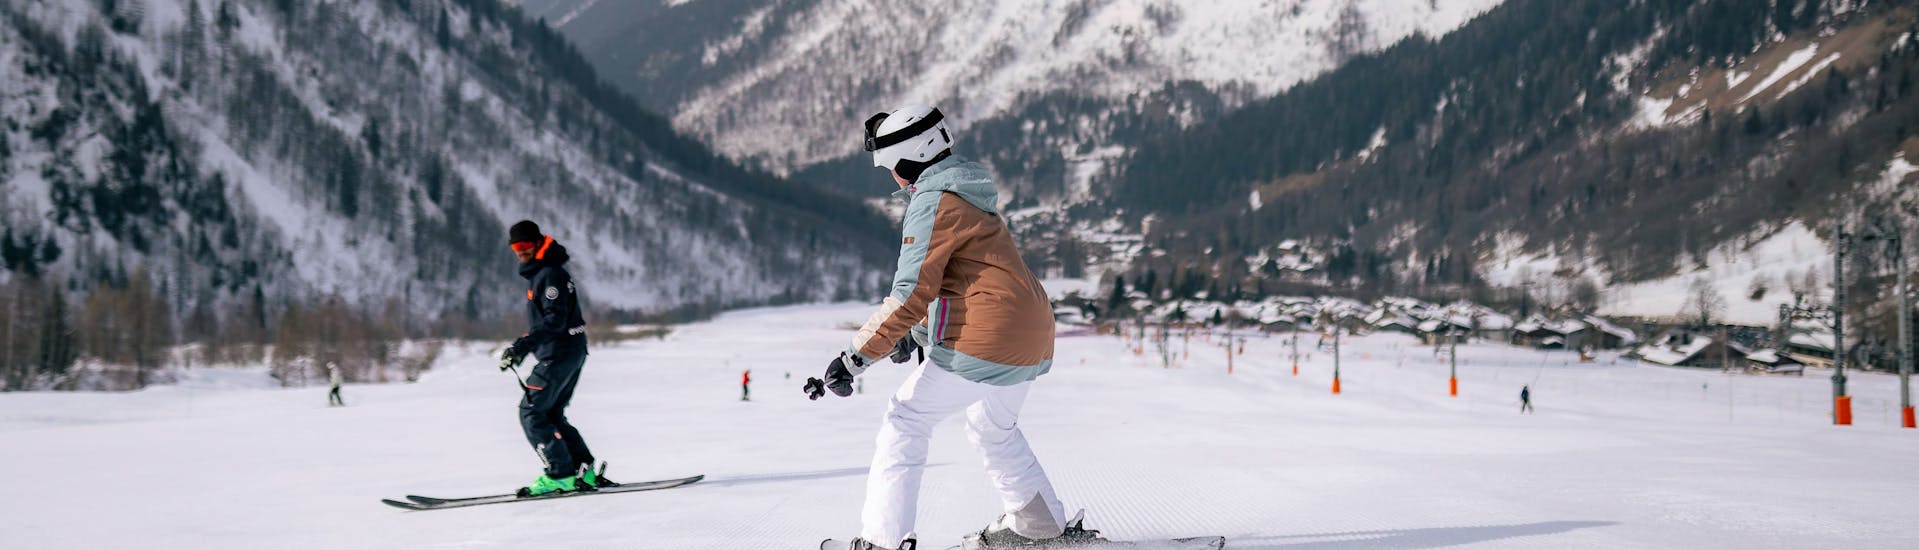 Accompagnement pendant une leçon de ski pour adultes (à partir de 13 ans) à Chamonix/Savoy.